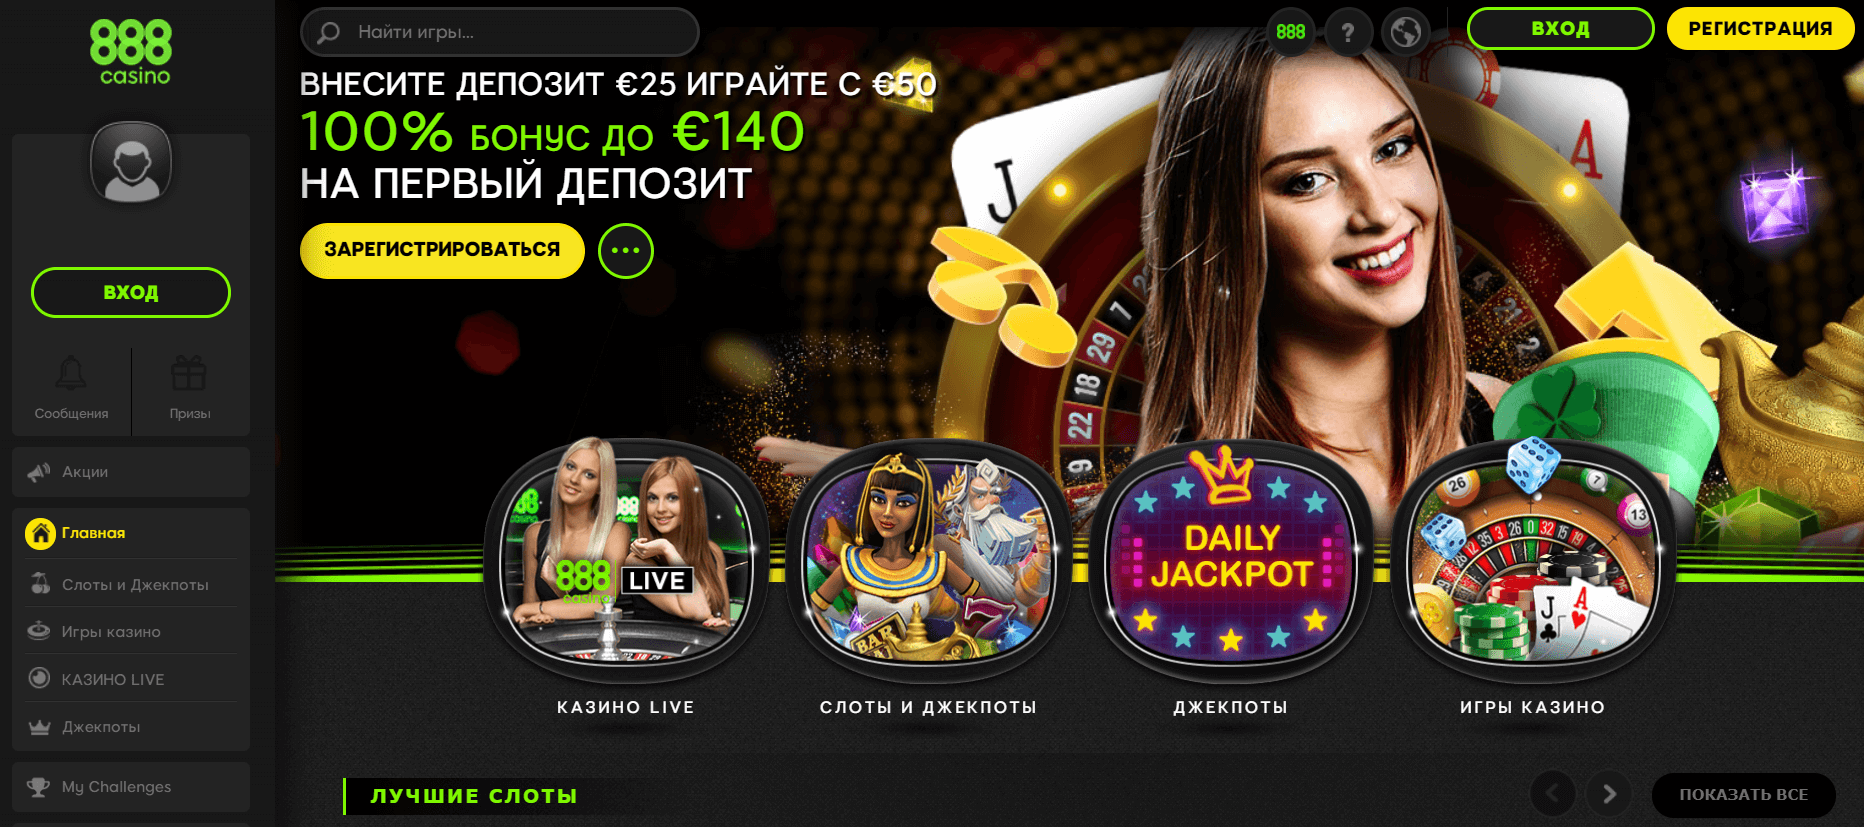 Официальный сайт казино 888